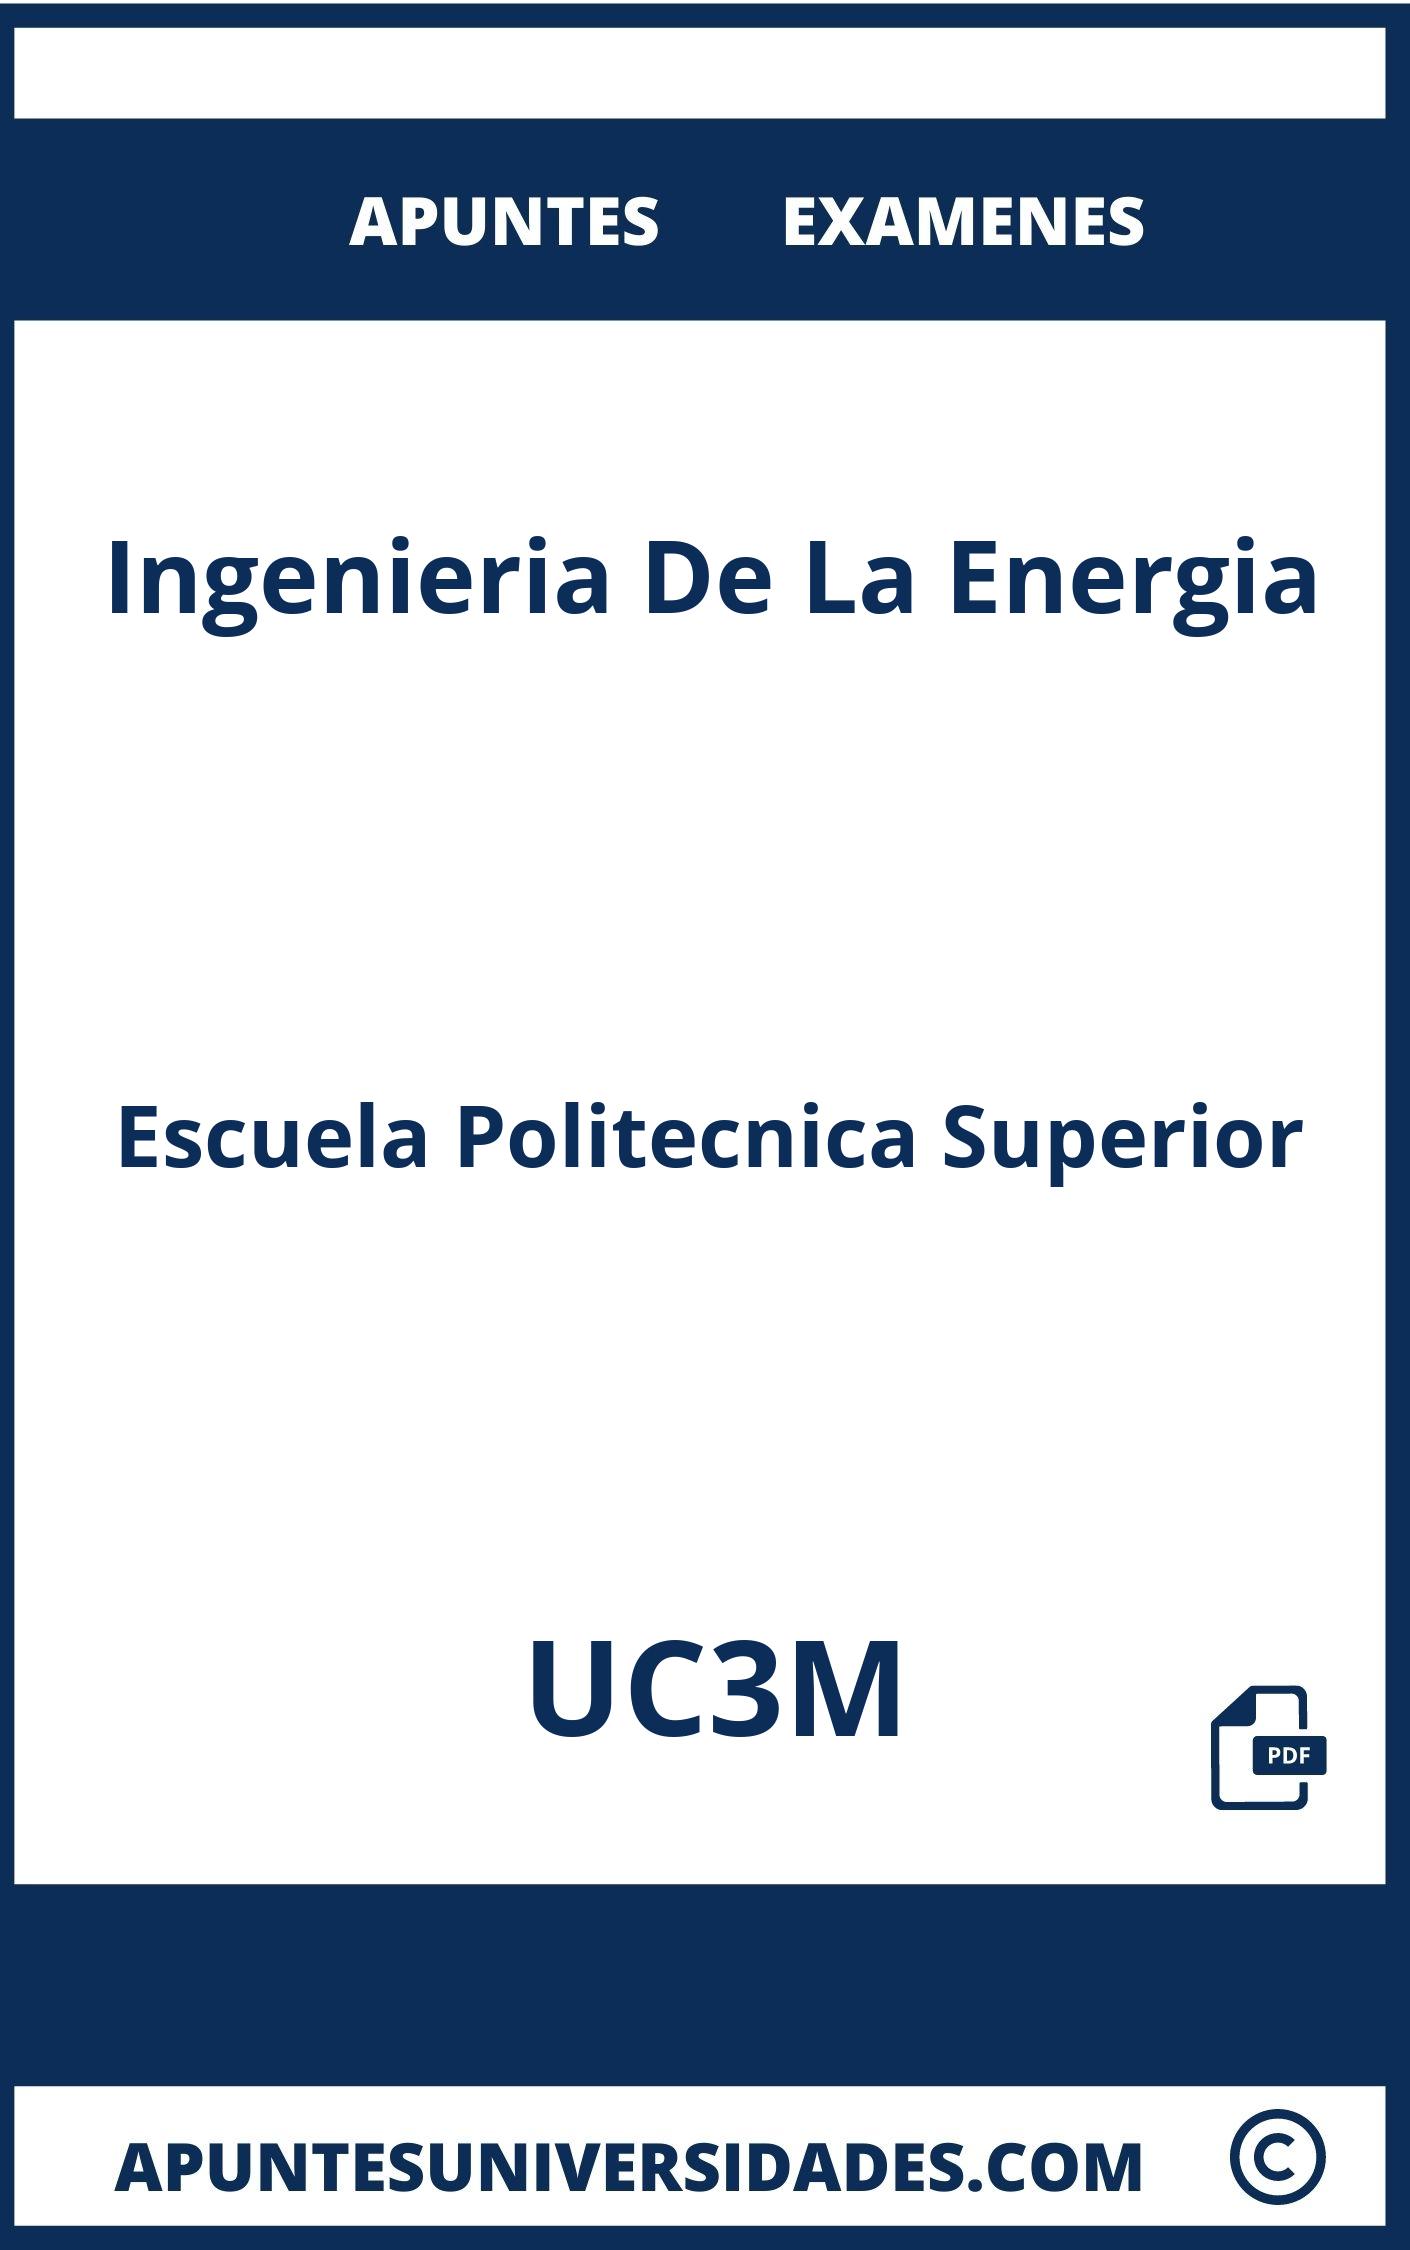 Examenes Ingenieria De La Energia UC3M y Apuntes